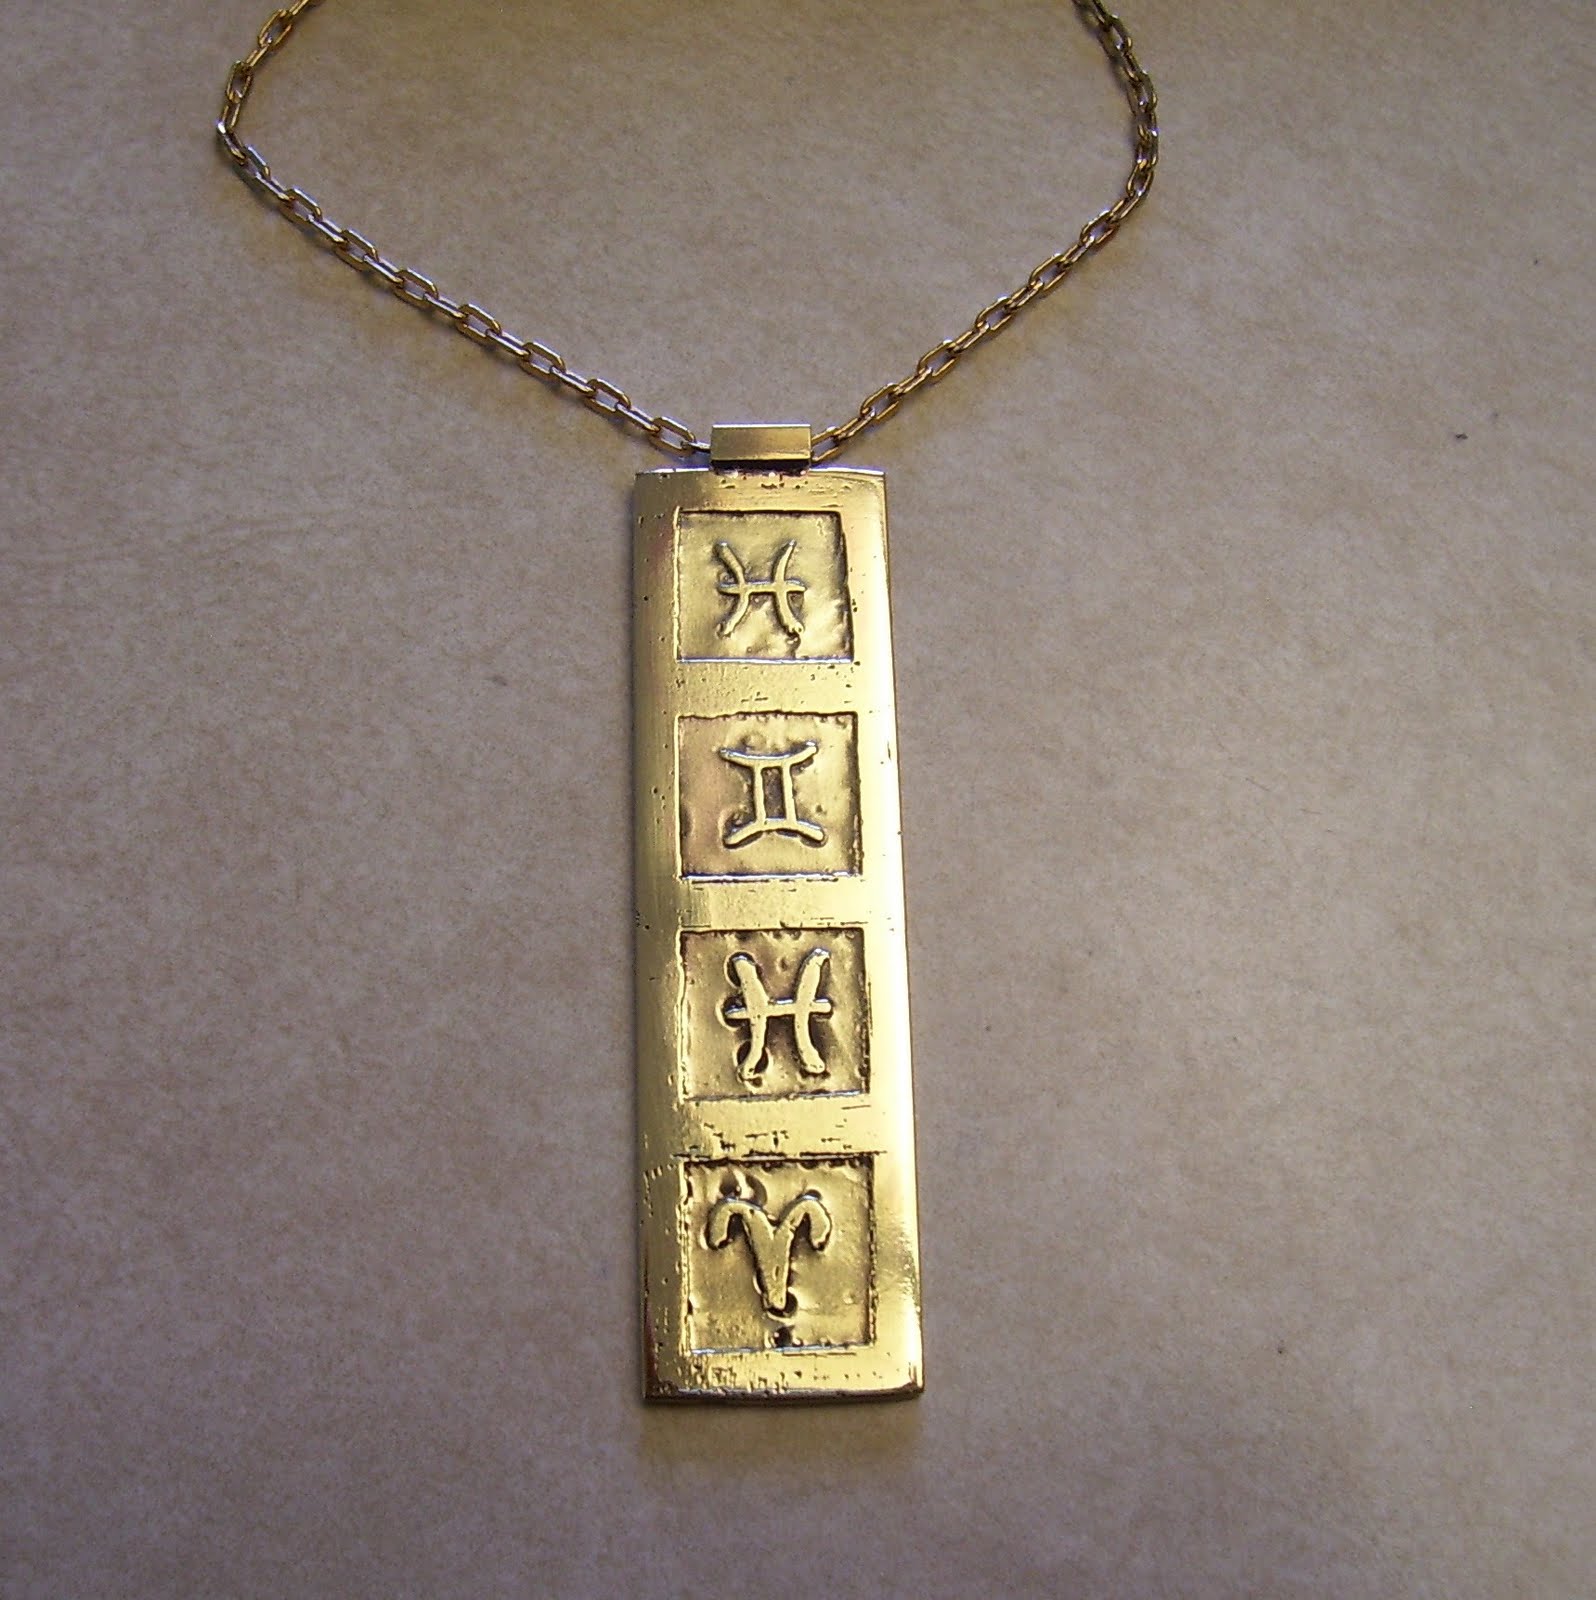 [astrological+sign+necklace+007.JPG]